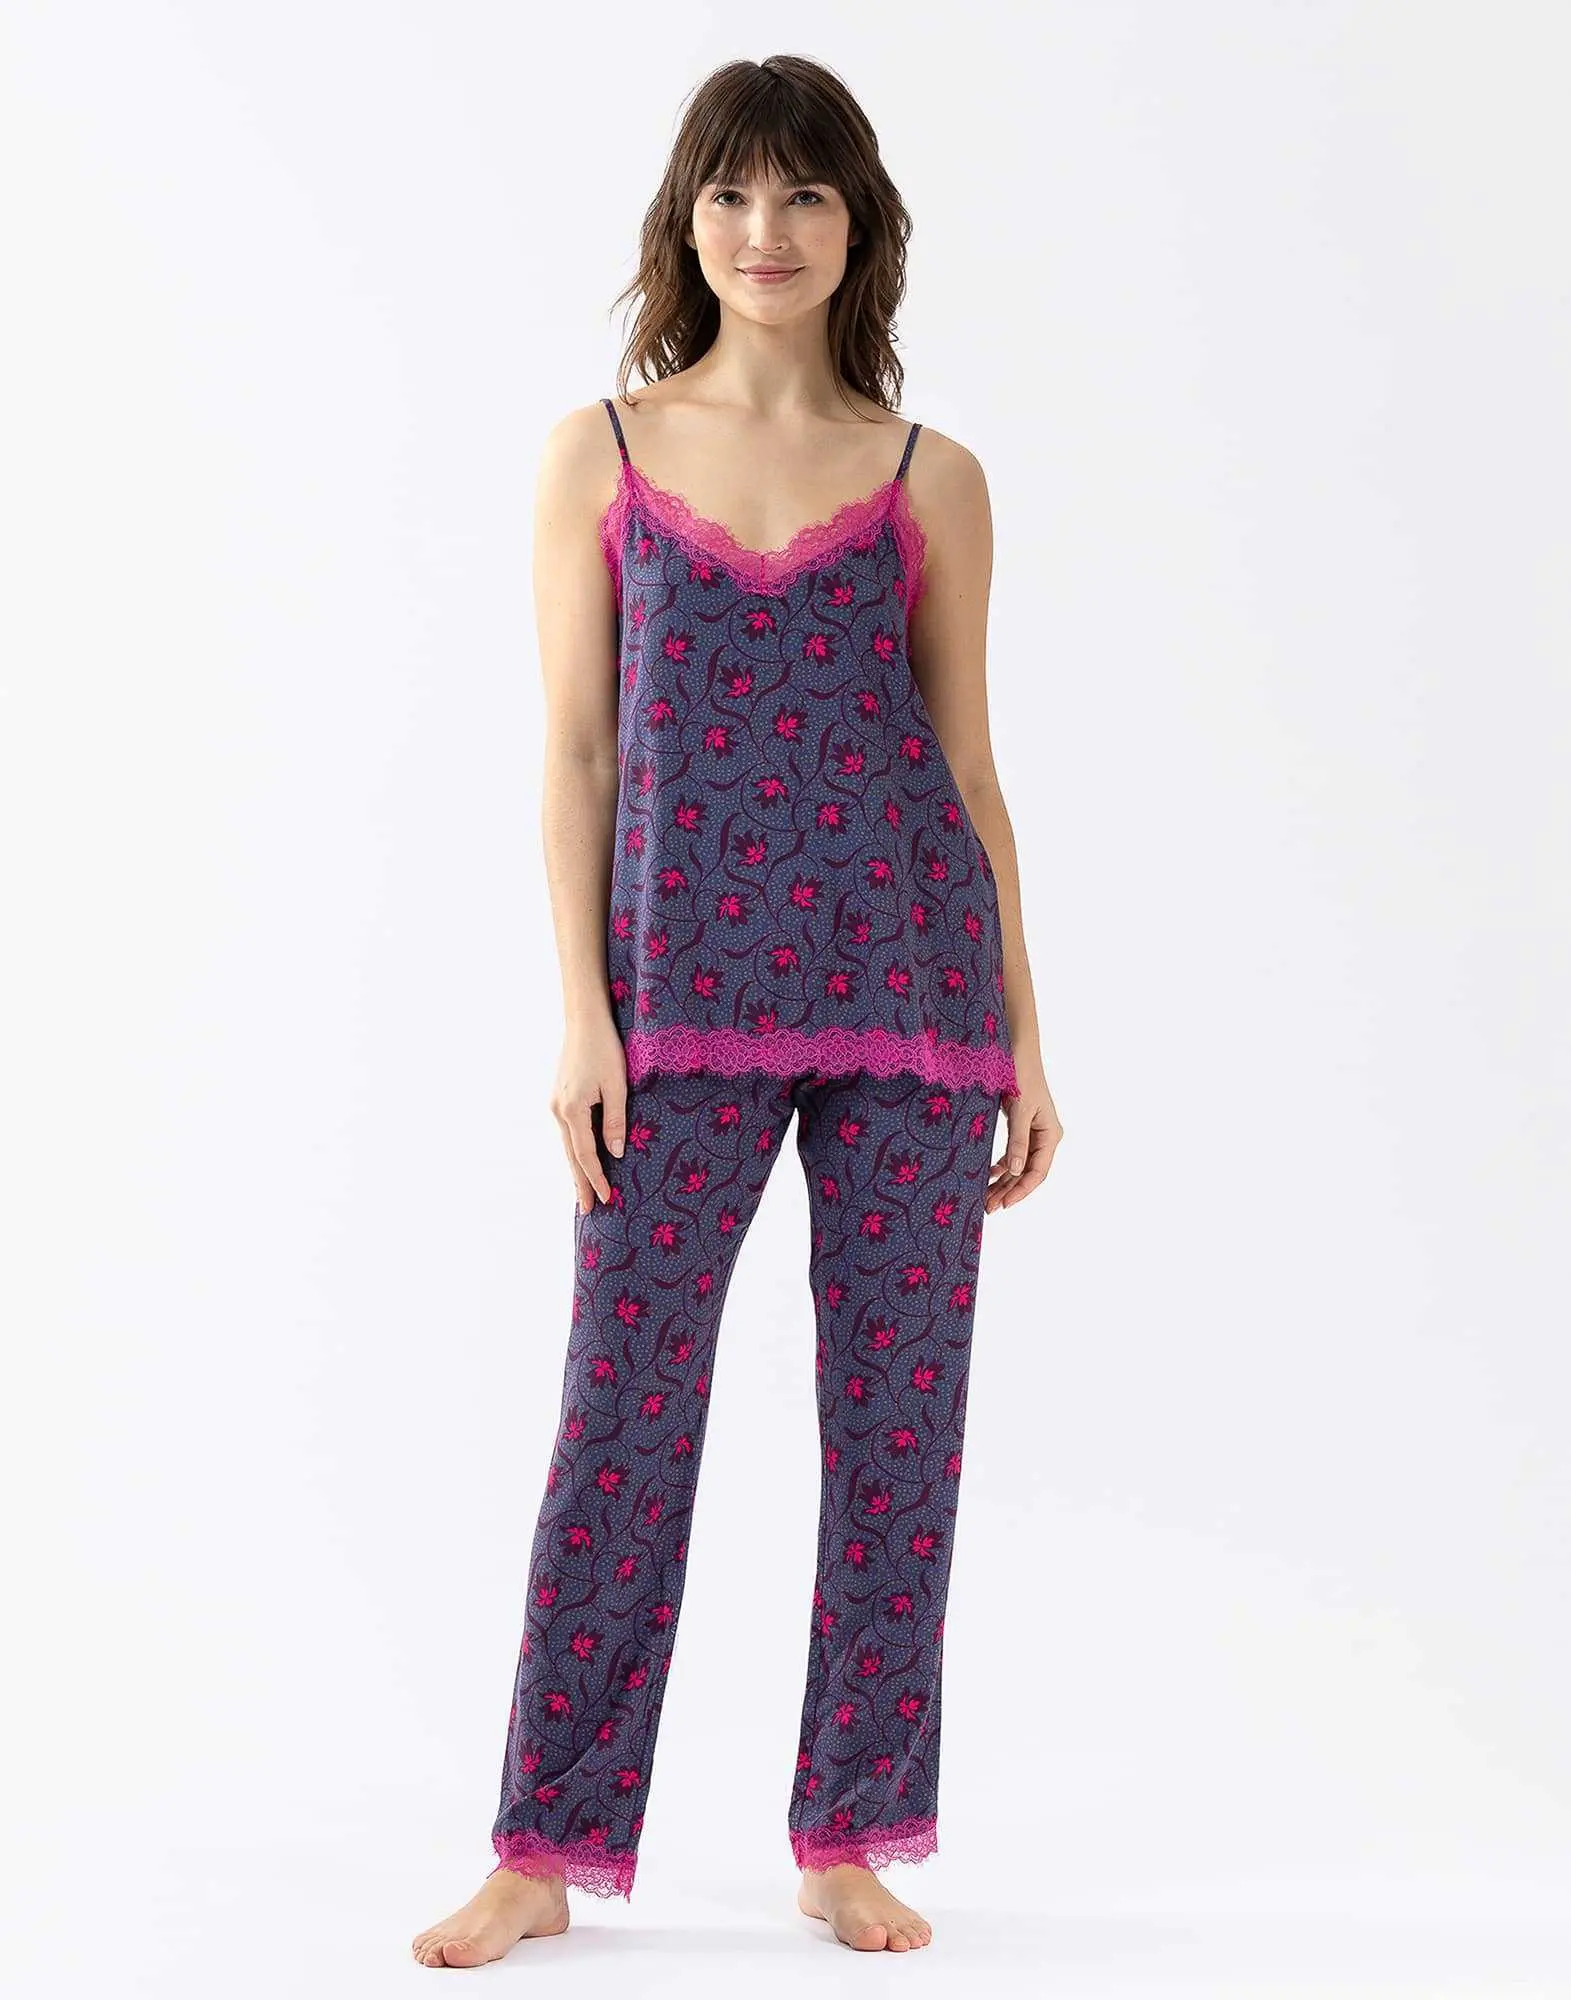 Camisole and trousers ALBA 604 100% viscose multicolour print